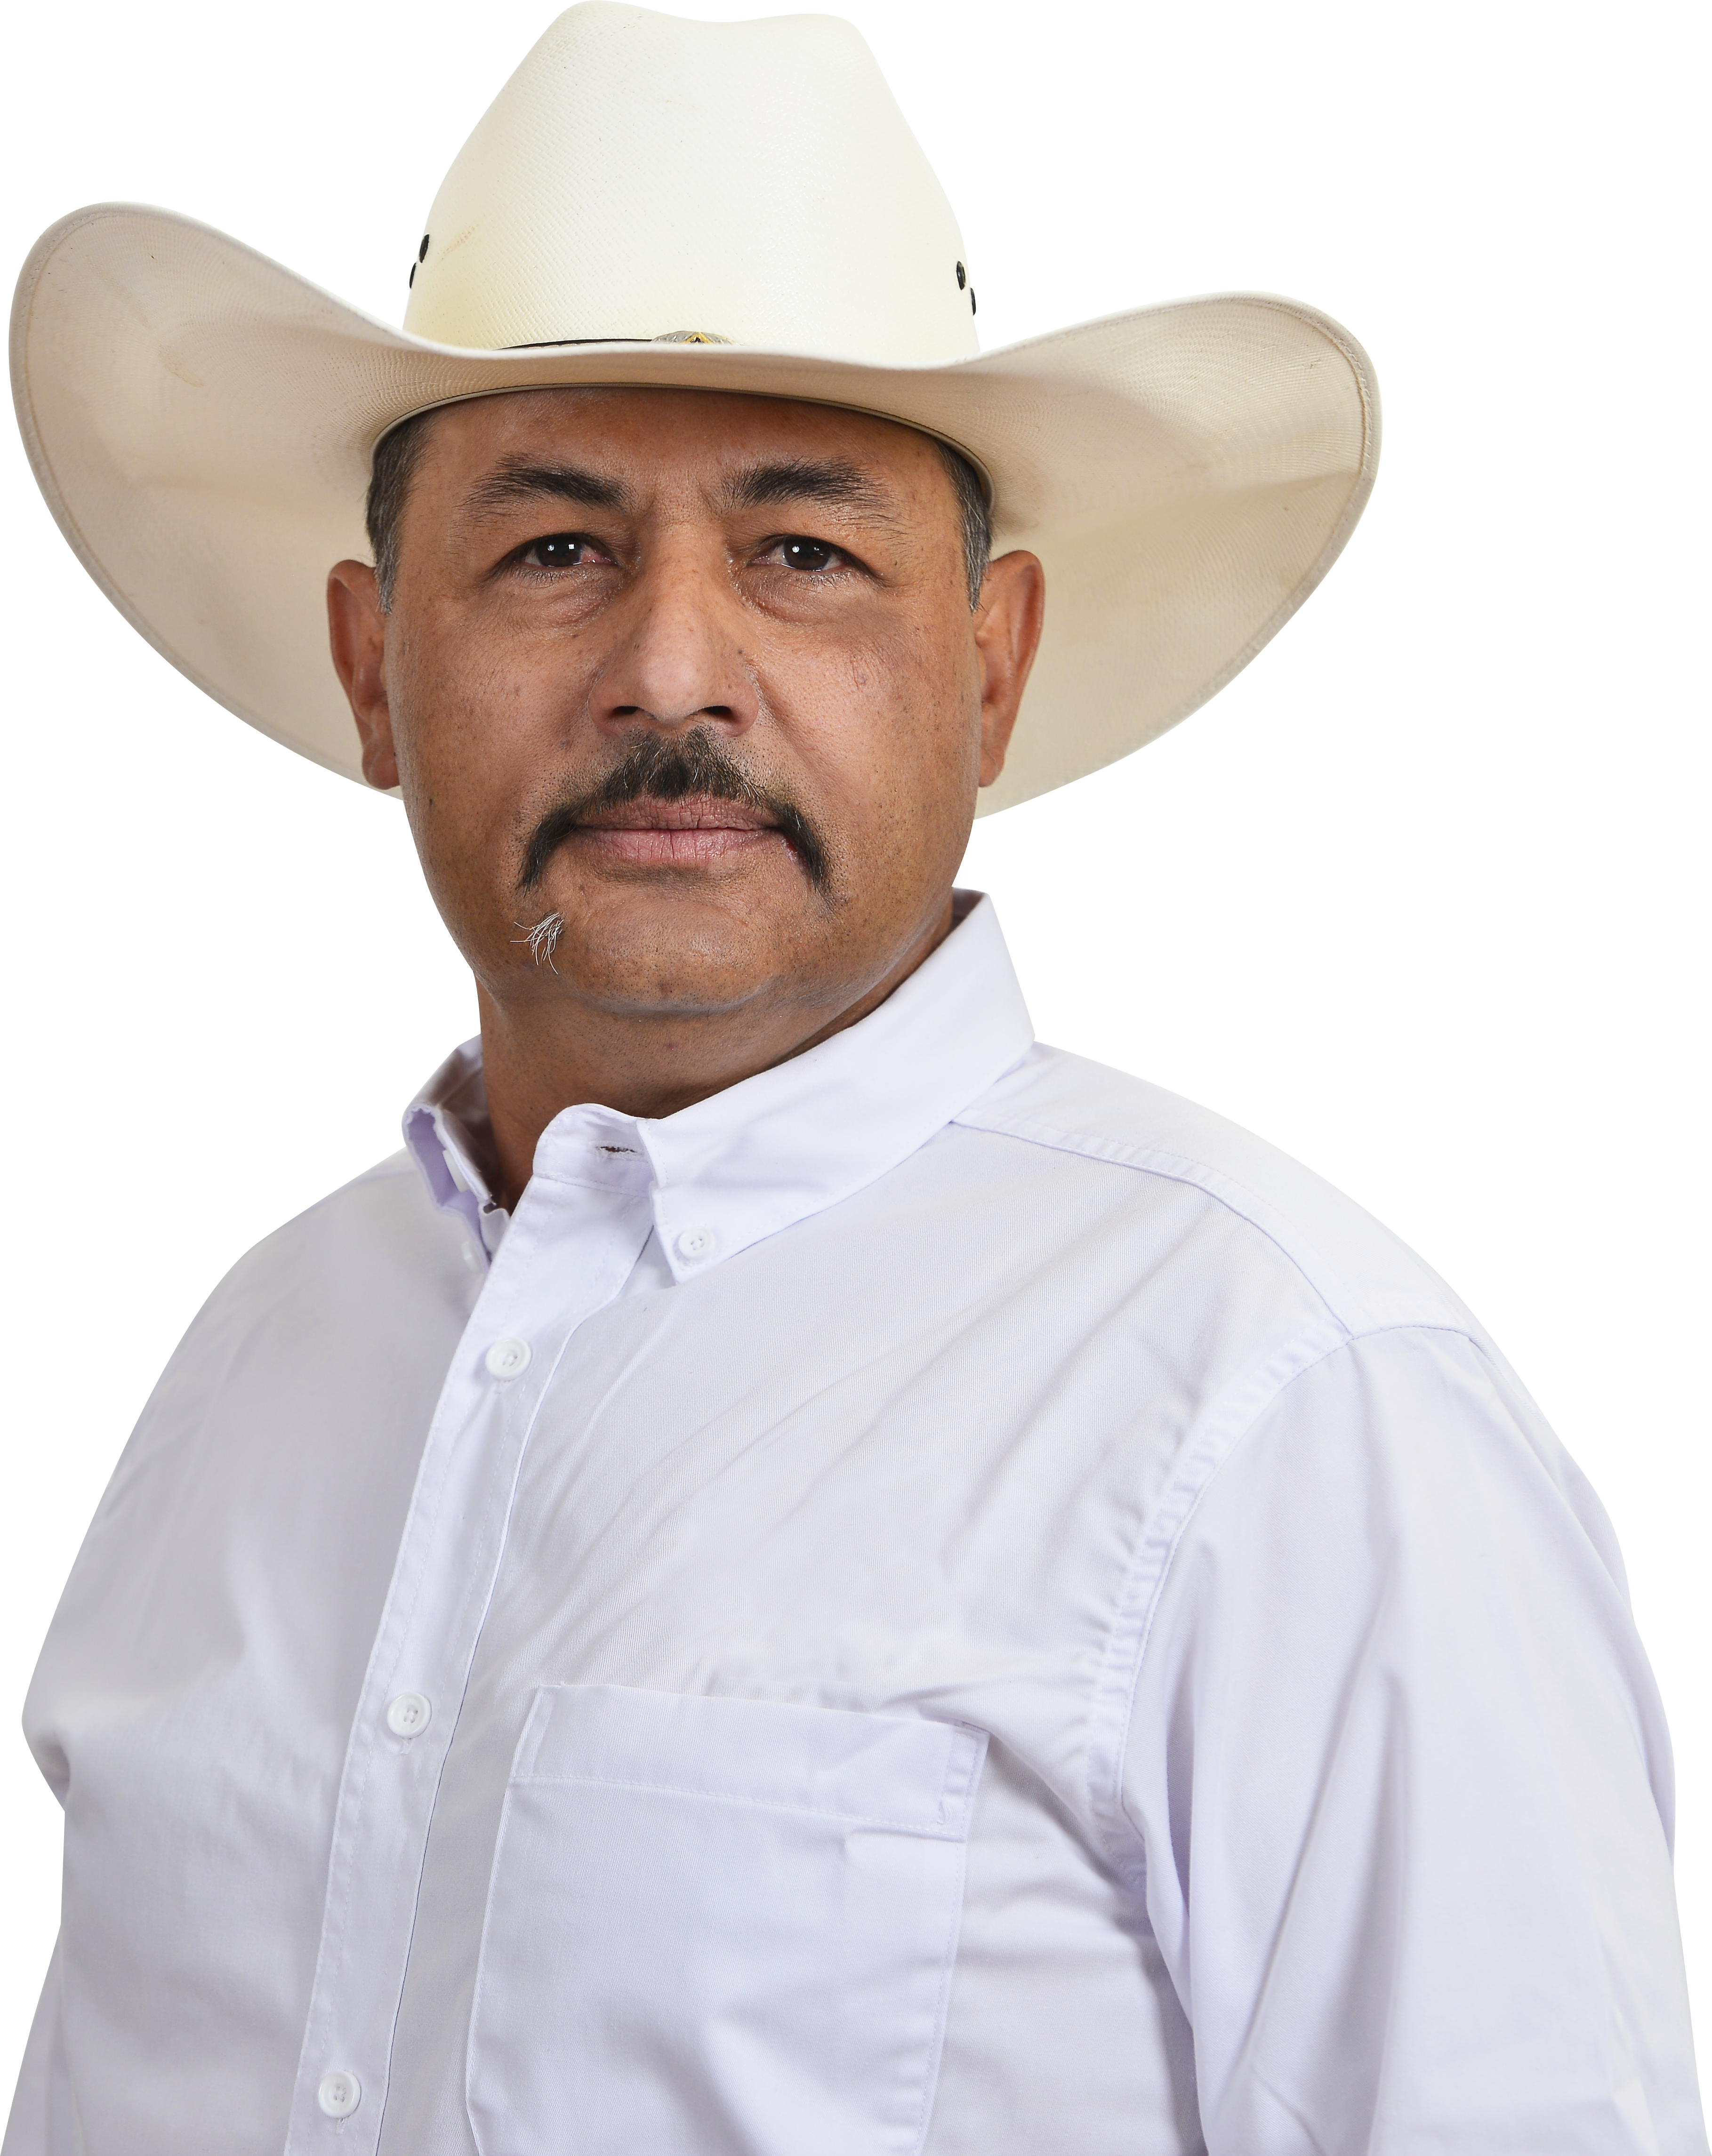 Foto del presidente municipal del municipio de Tizapán el Alto